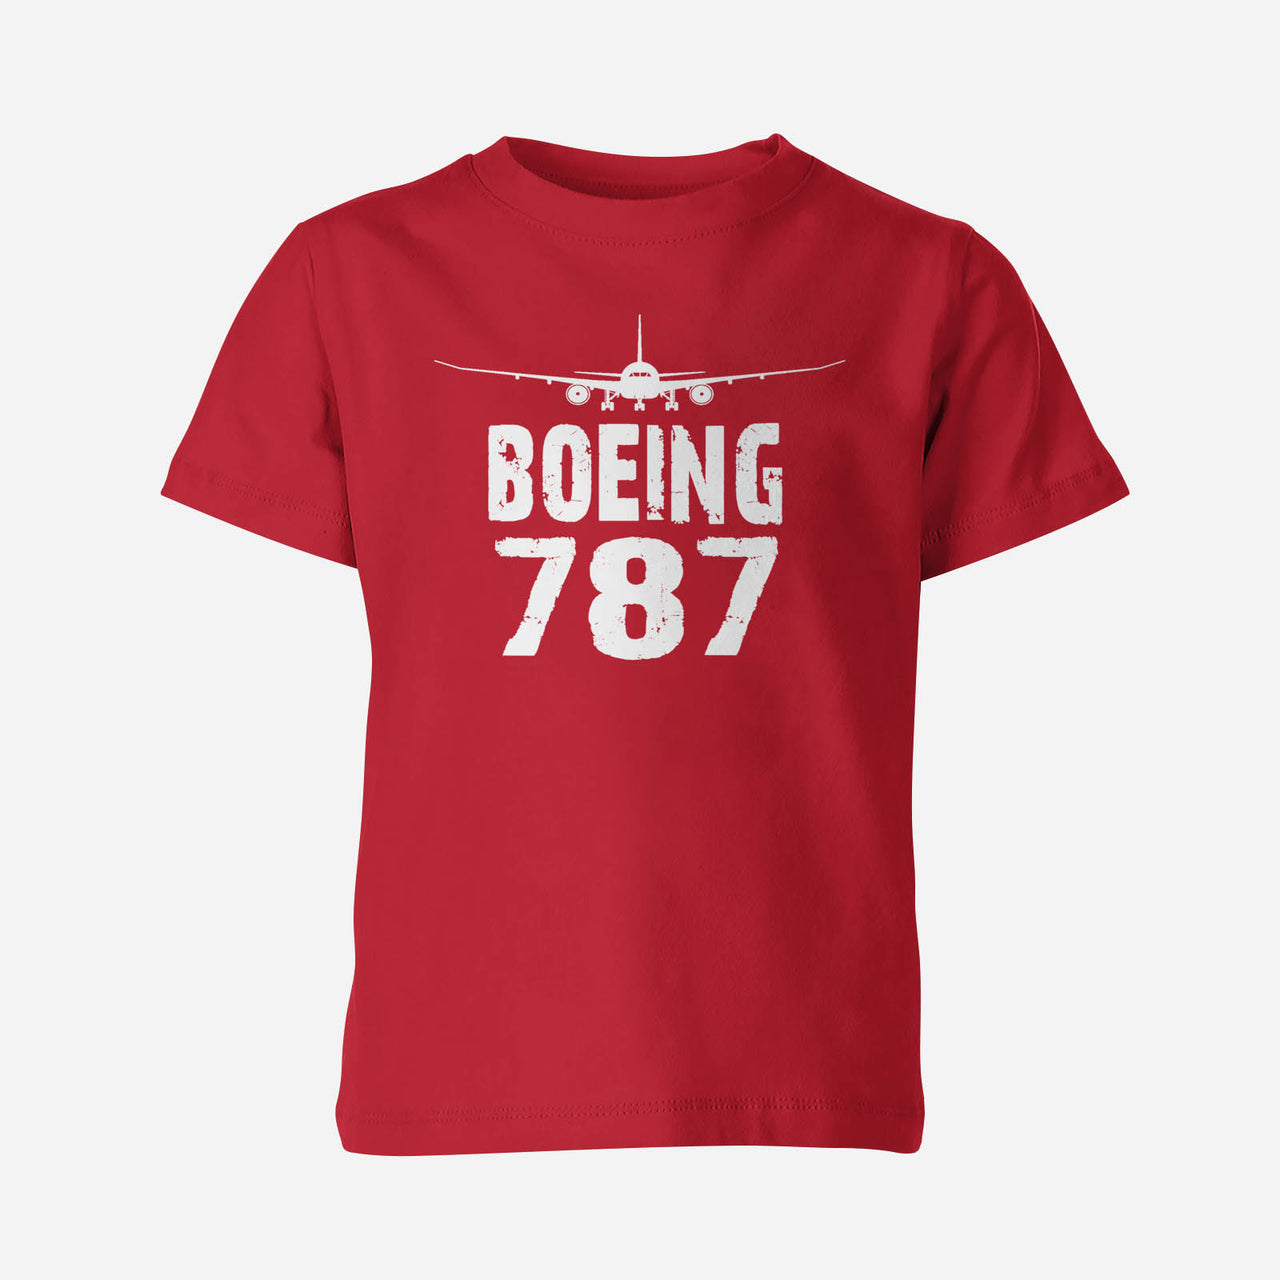 Boeing 787 & Plane Designed Children T-Shirts